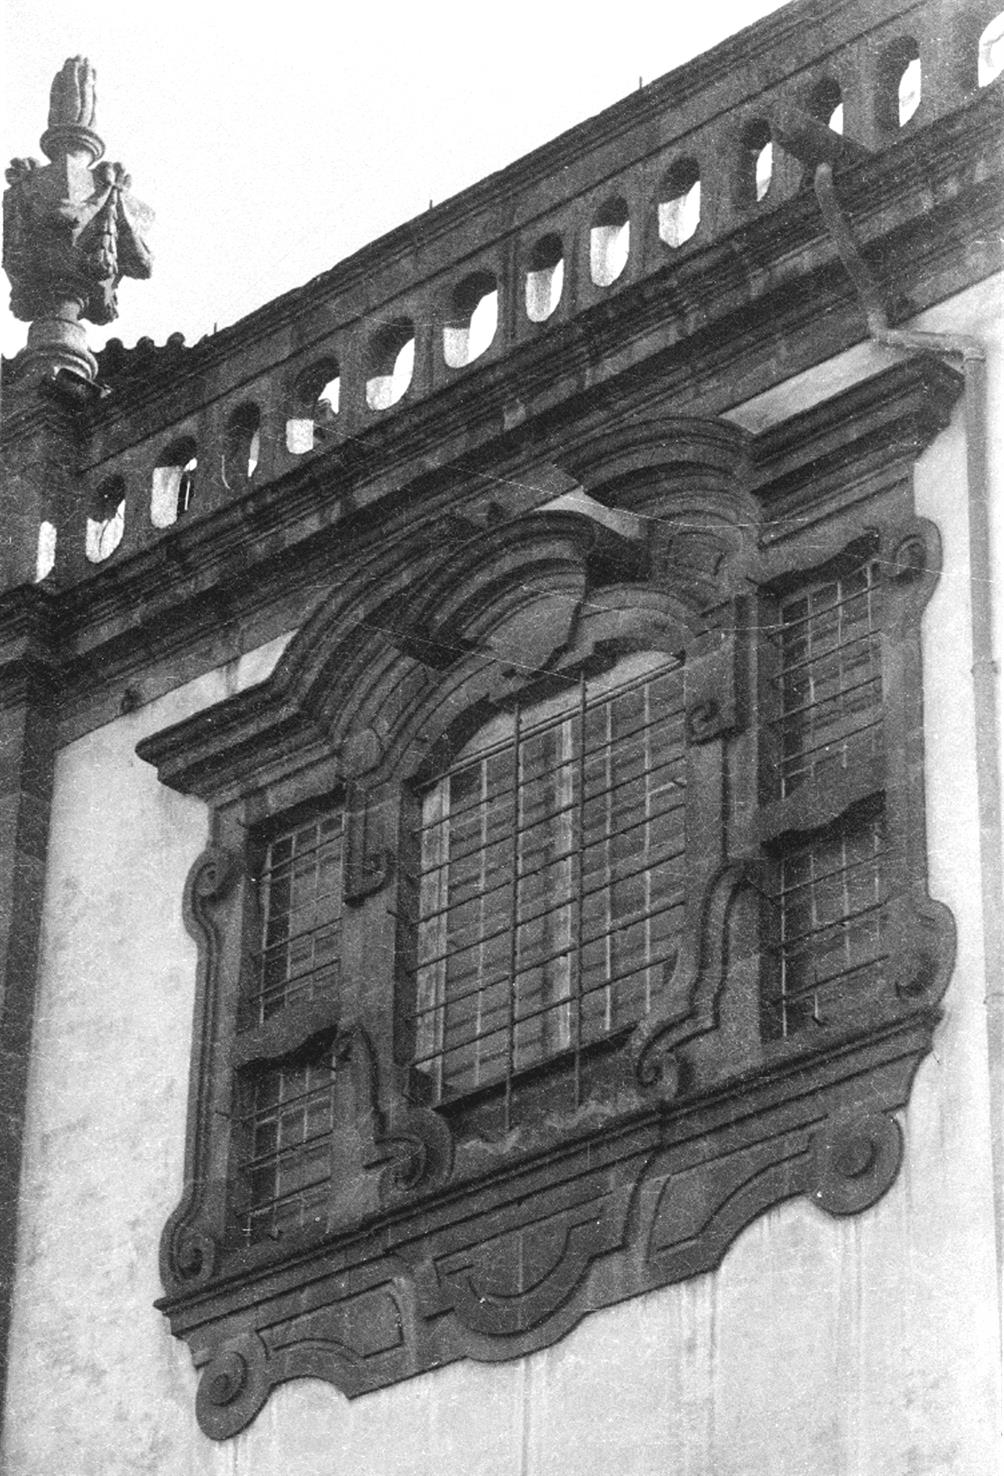 [Porto : janela da igreja dos Clérigos]